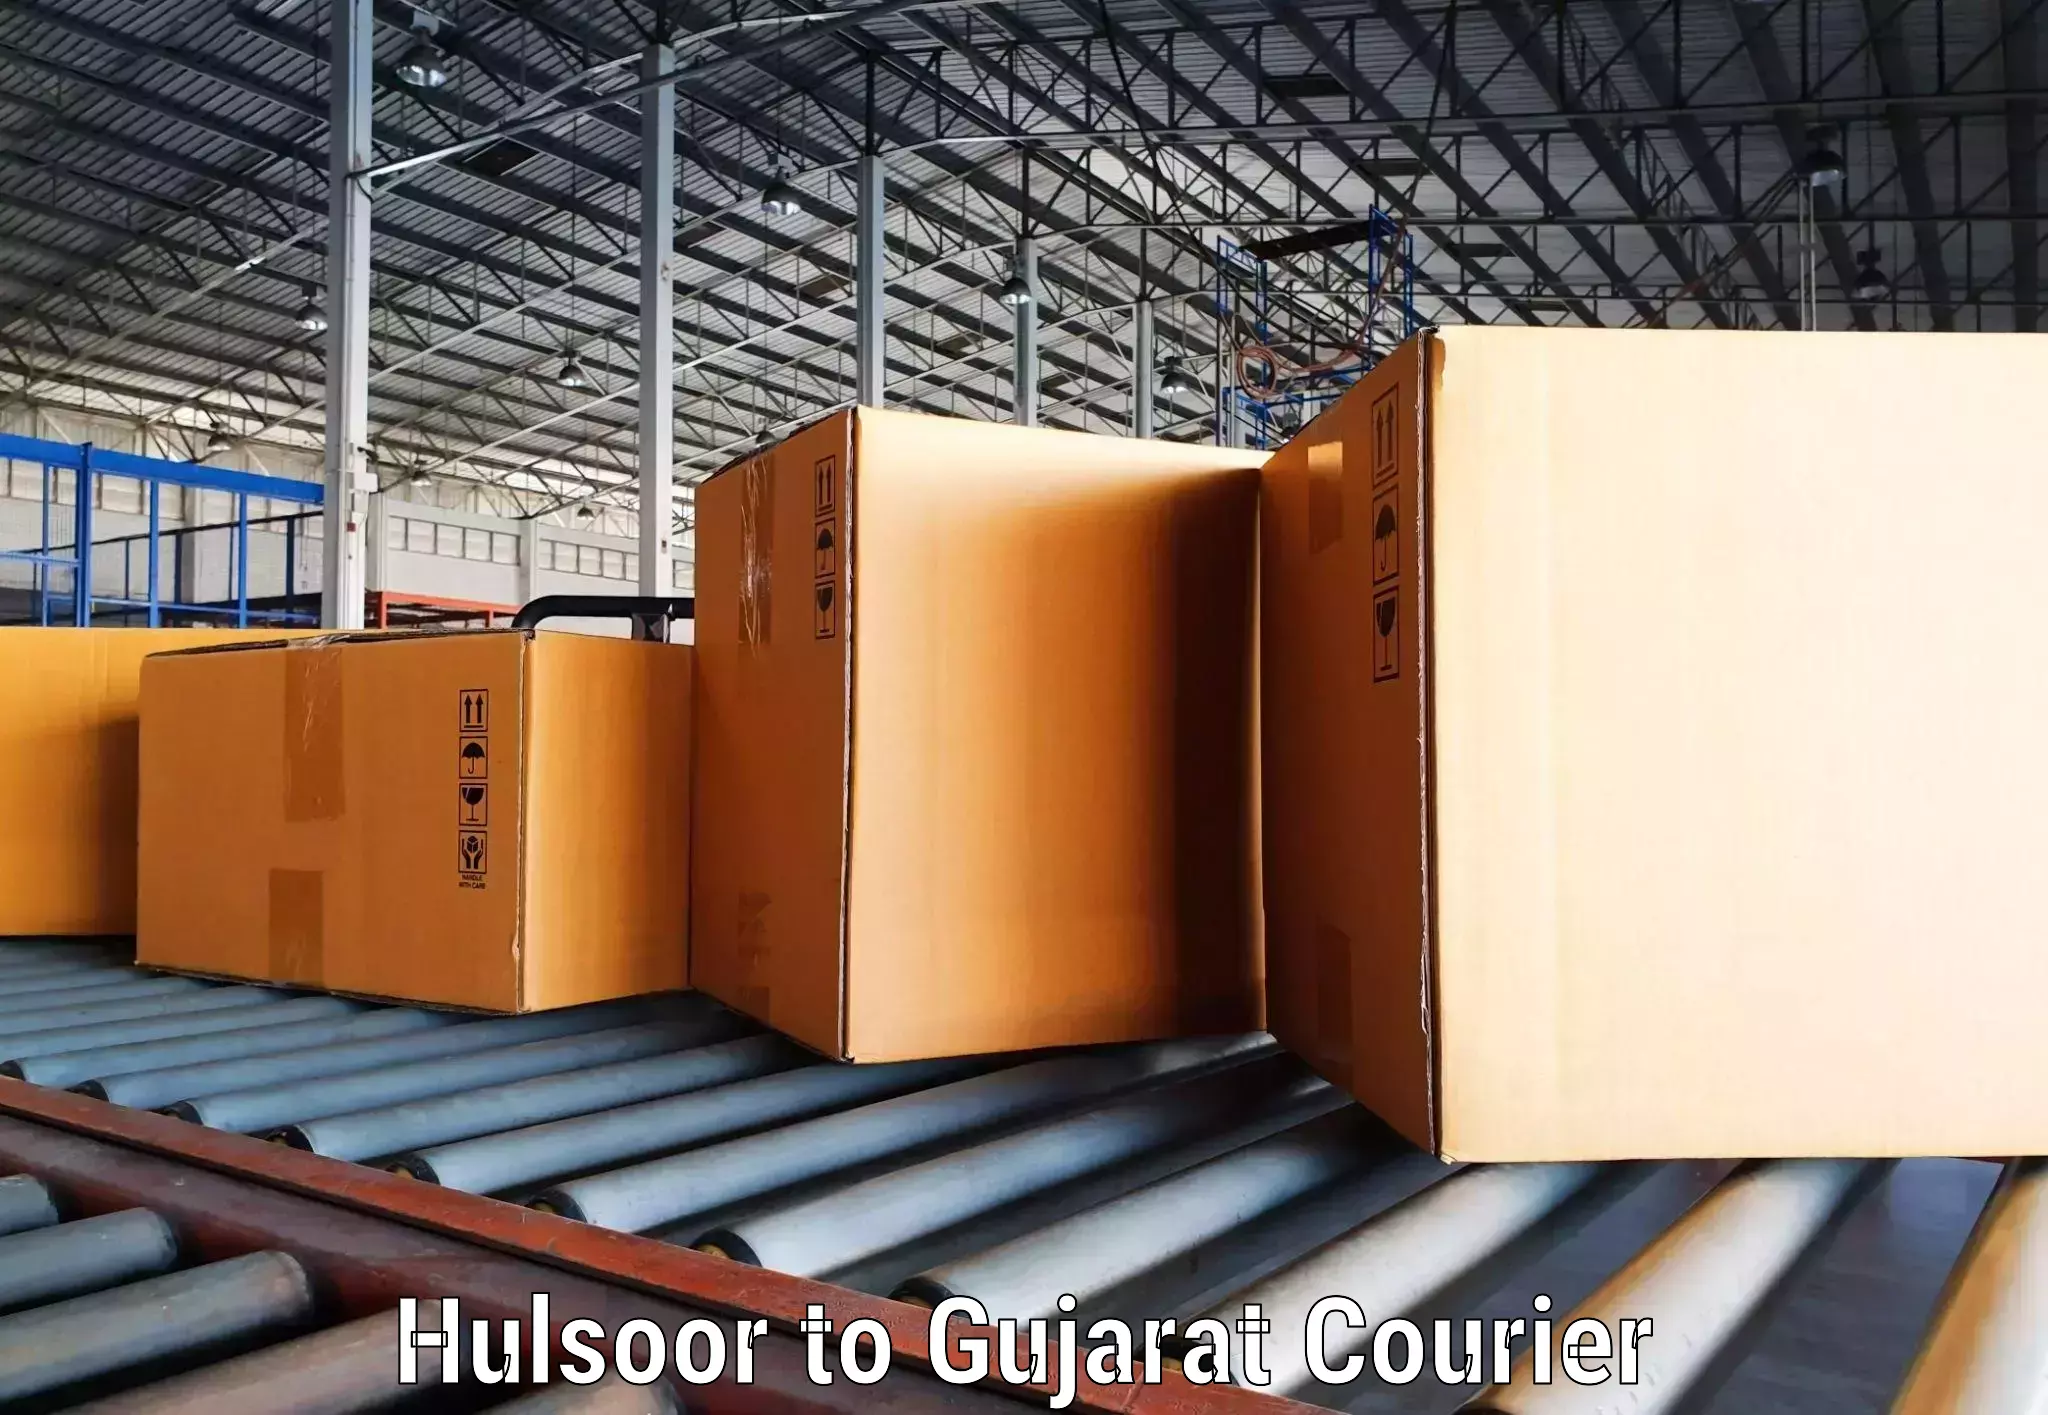 Digital courier platforms Hulsoor to Harij